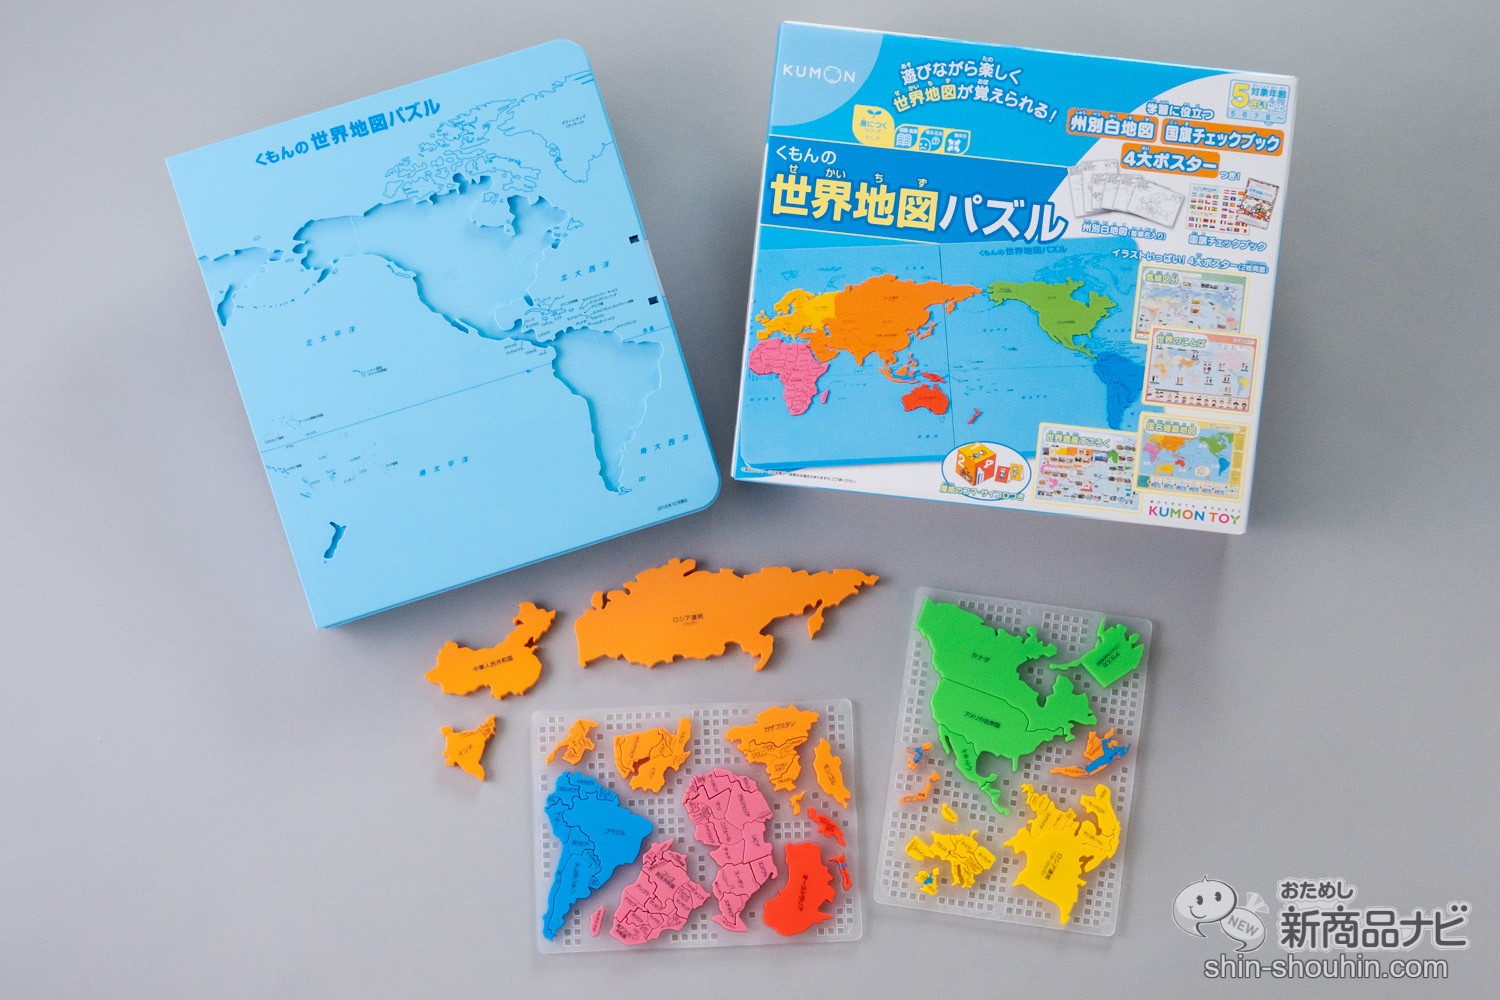 くもんの日本地図パズル 公文 KUMON おまけ付き - ジグソーパズル